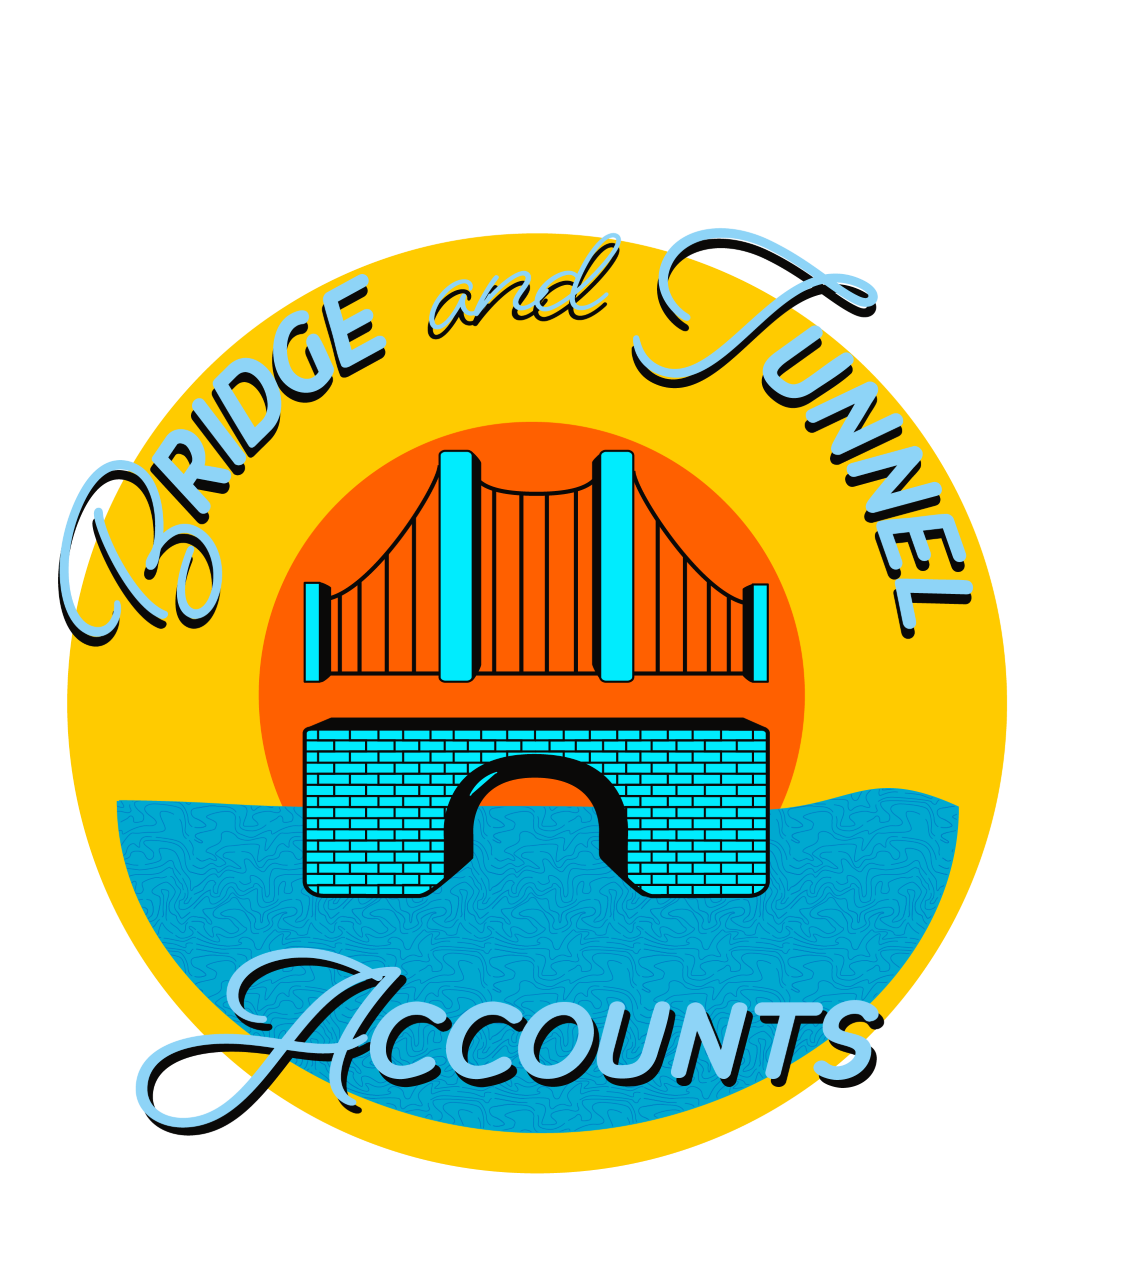 Bridge and Tunnel Accounts